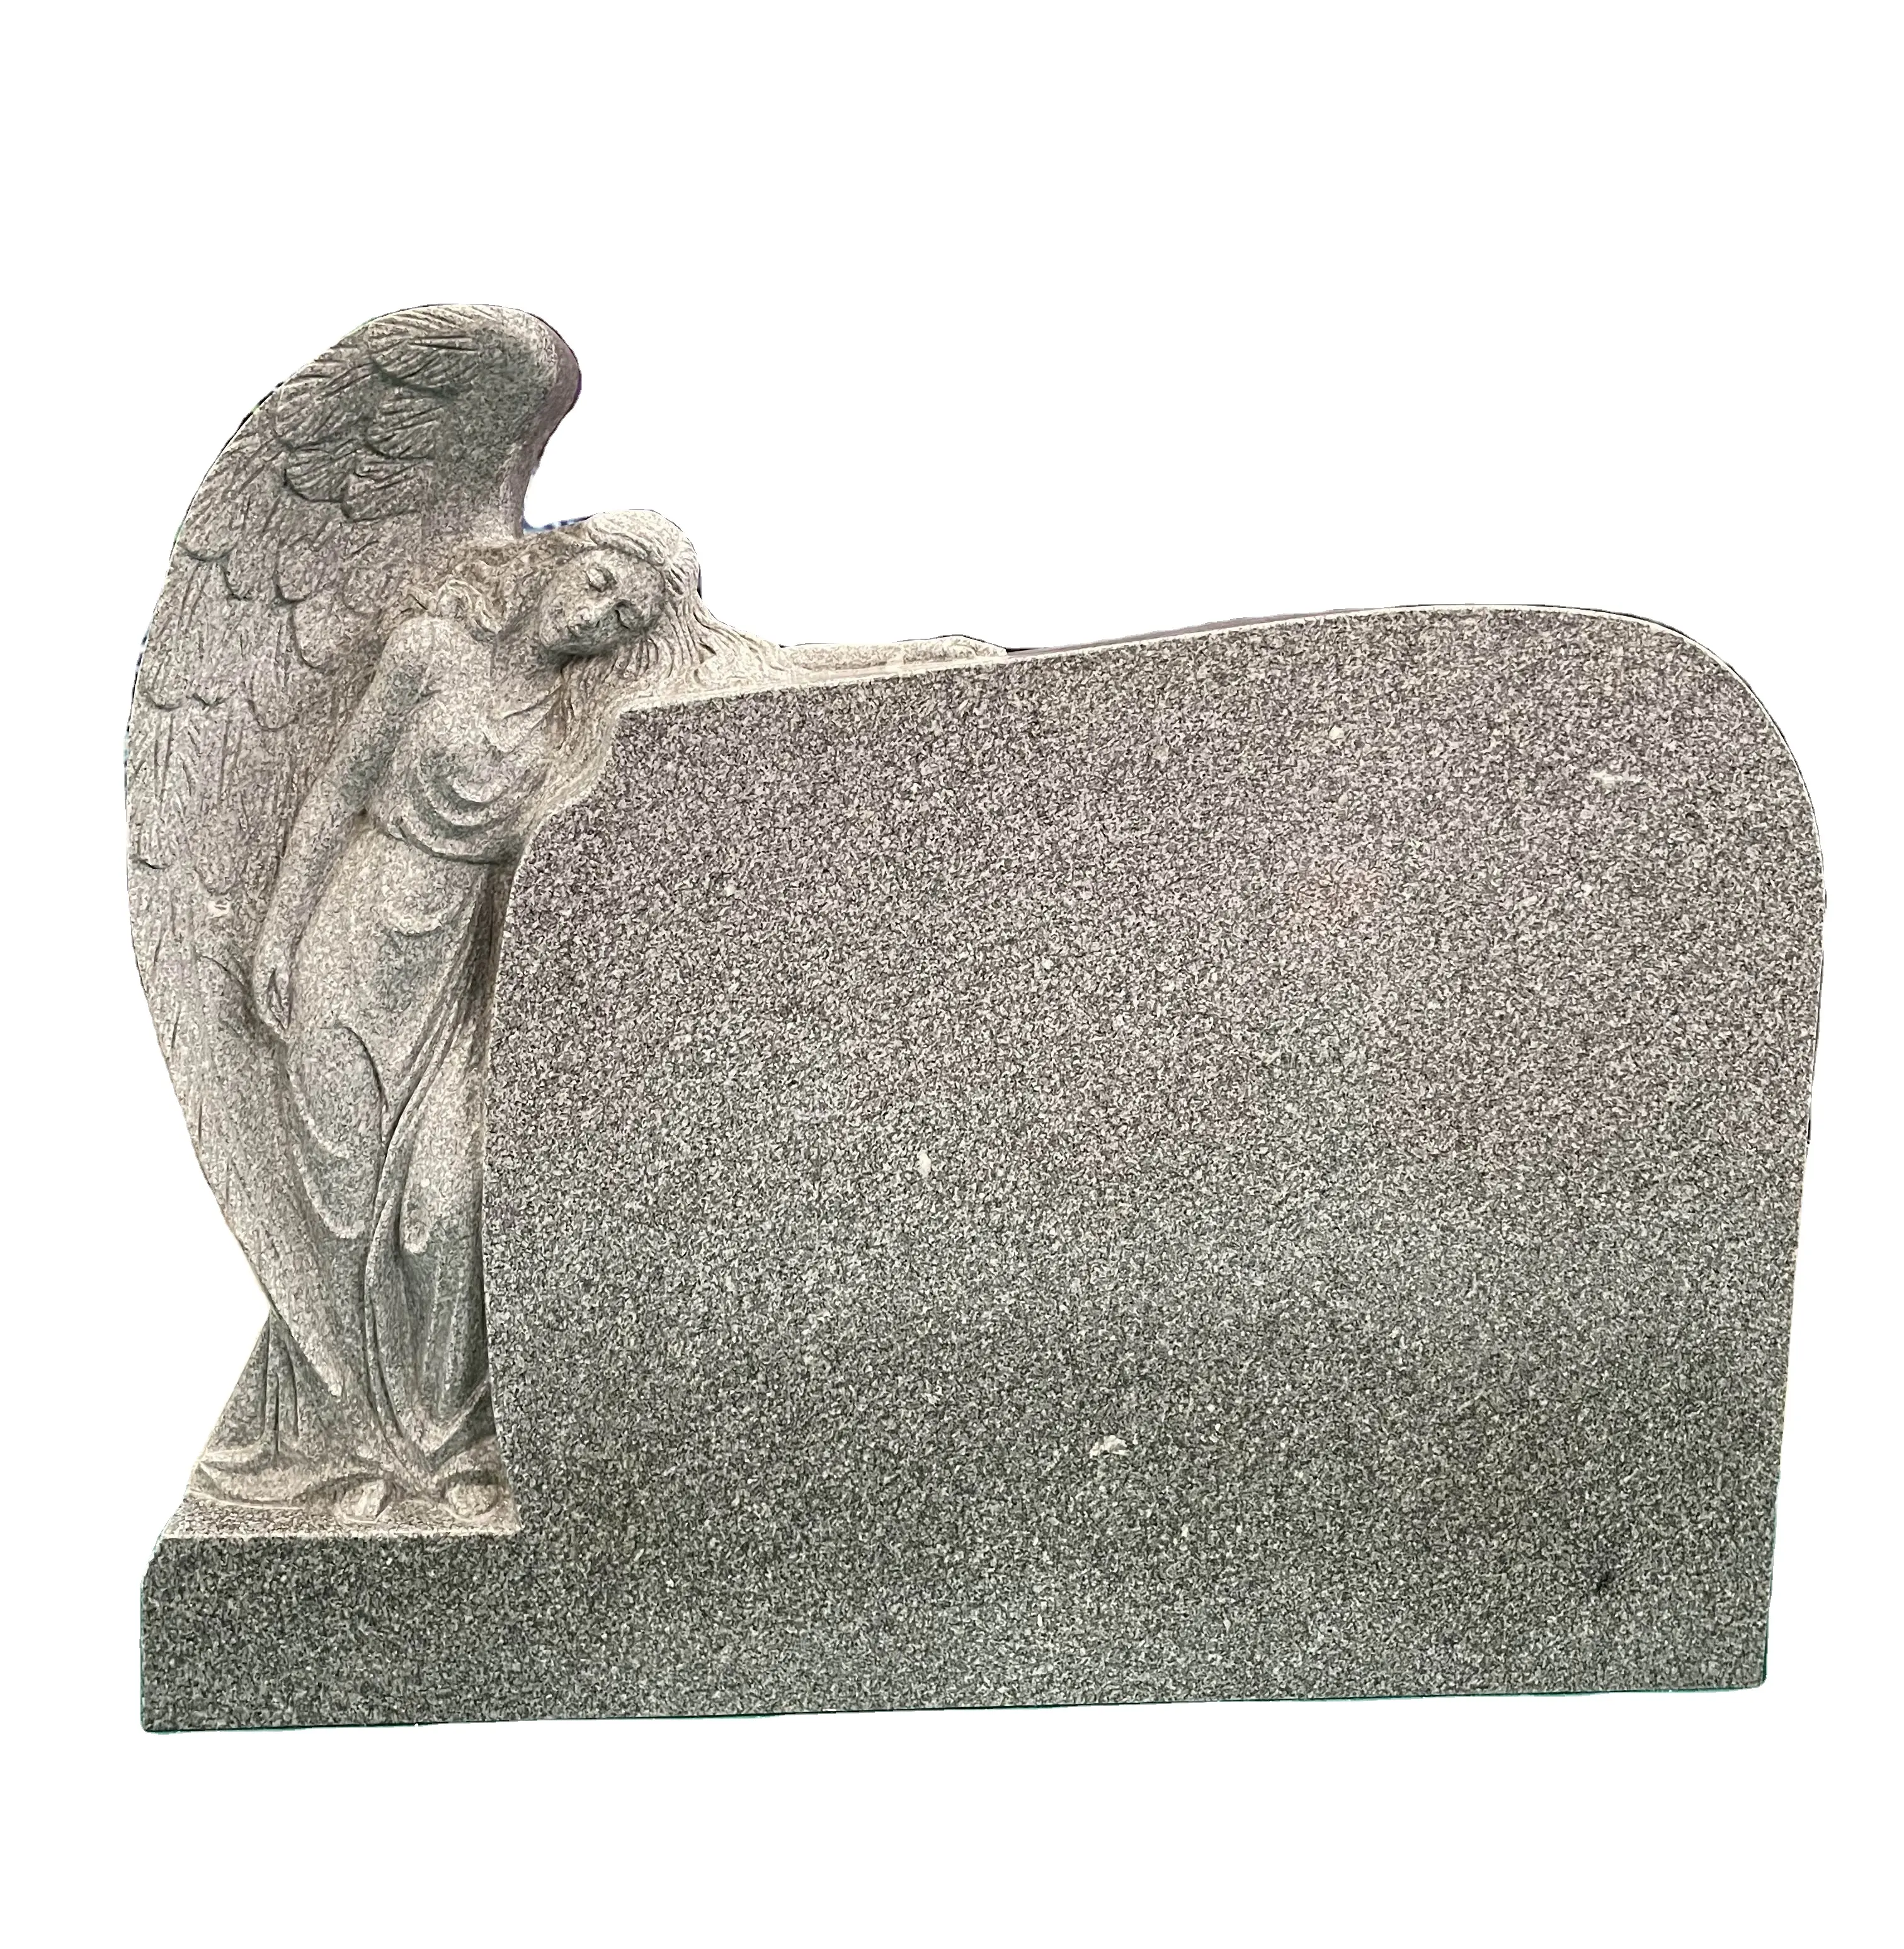 Grigio granito intaglio a mano angelo contro in posizione verticale tomba di pietra lapide